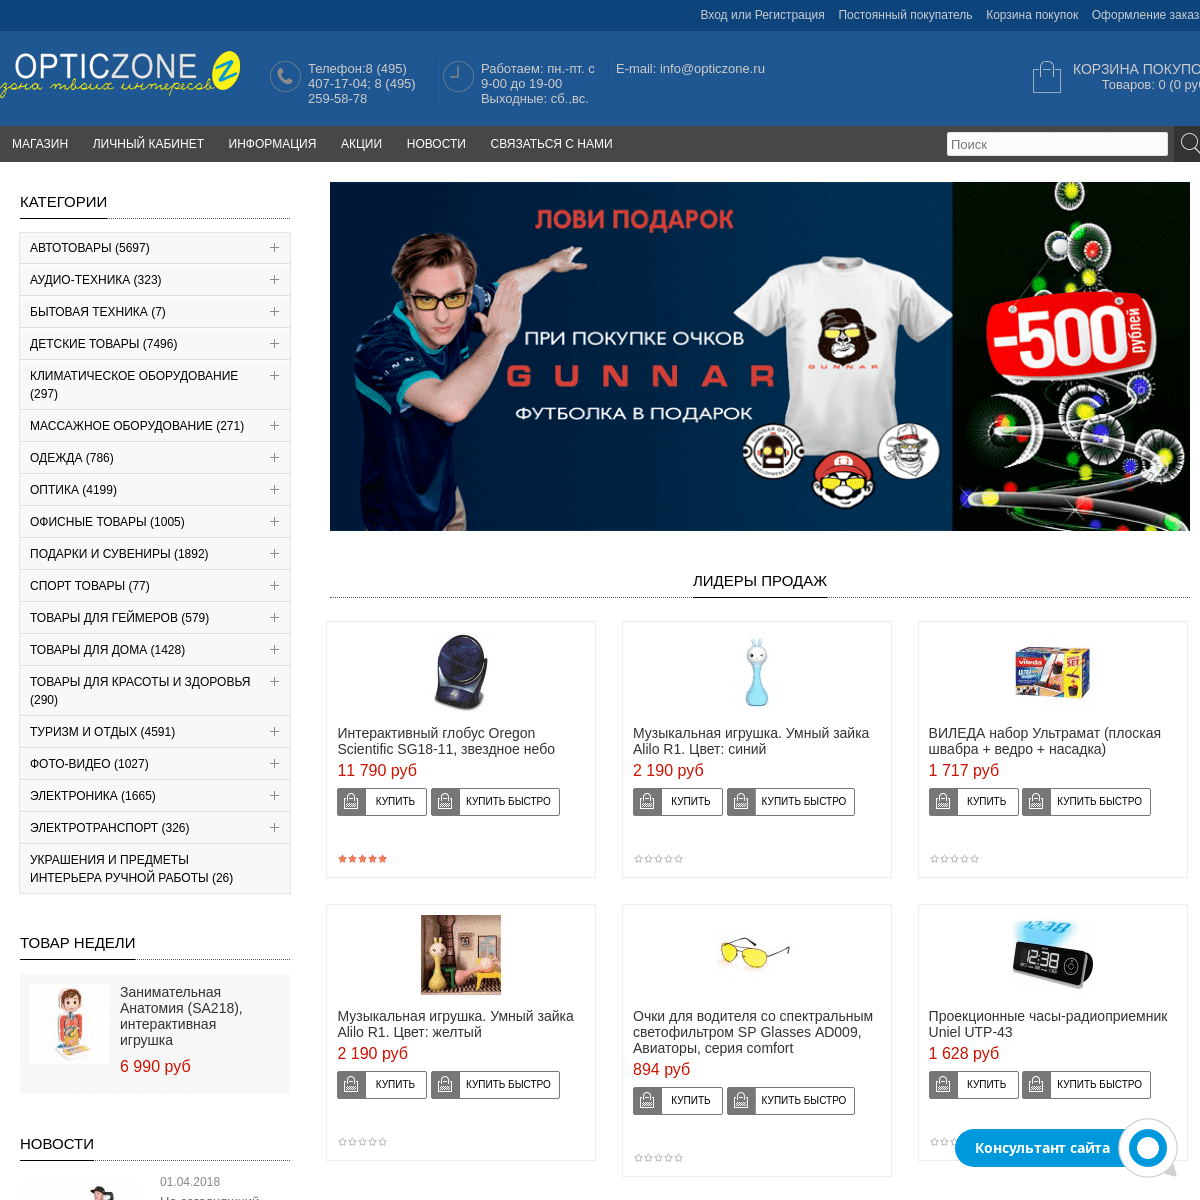 Opticzone.ru - интернет-супермаркет с широким спектром ассортимента - низкие цены, большой каталог, доставка по Москве и России.